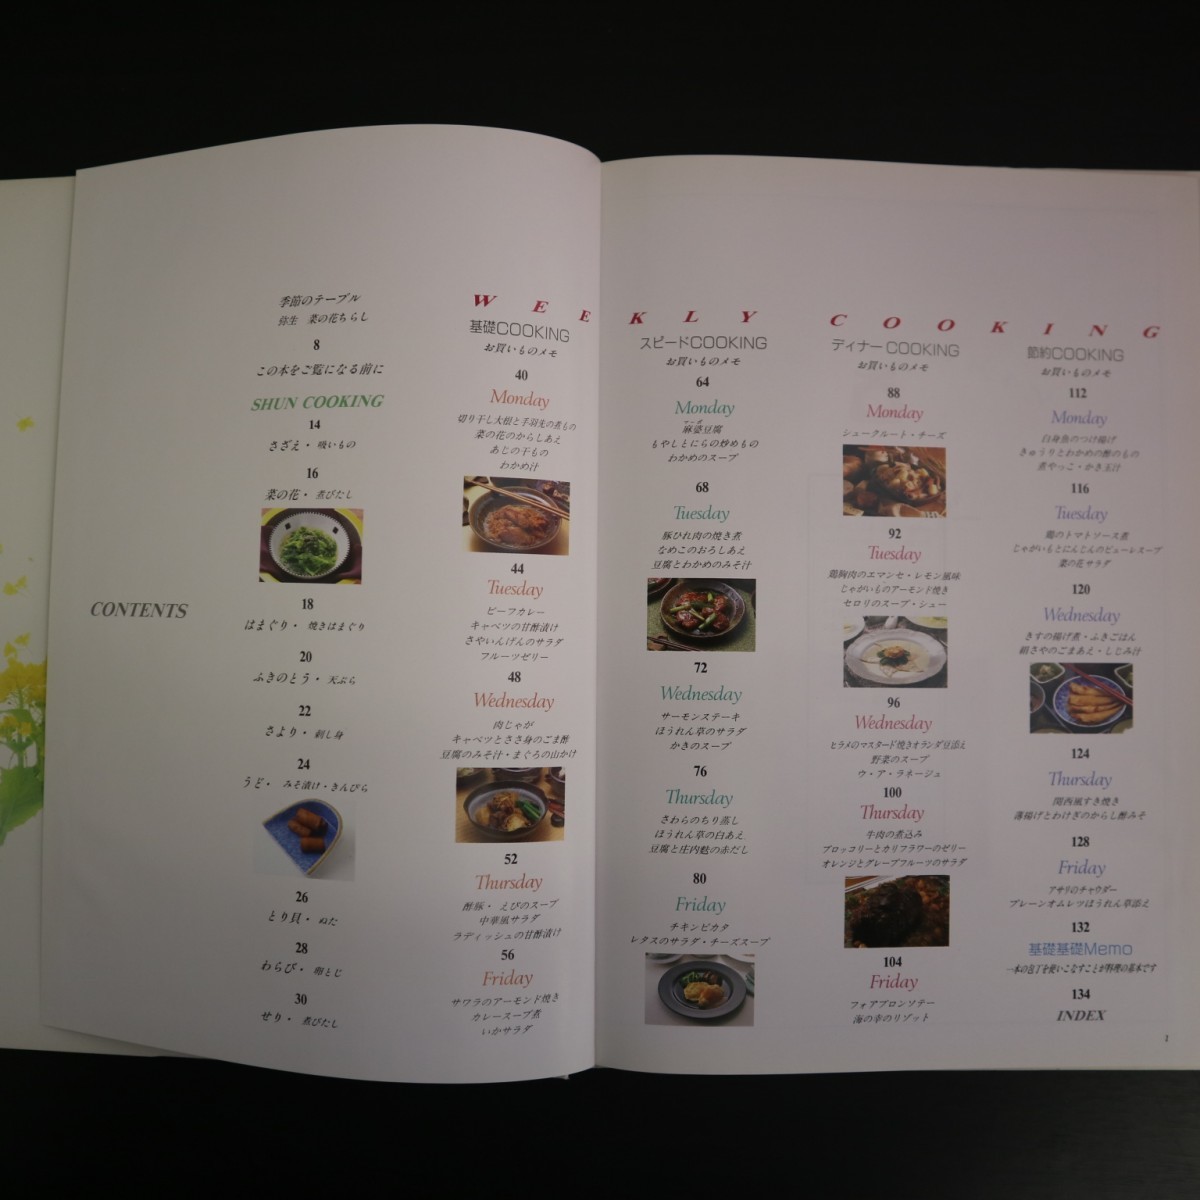 特2 51215 / SHUN COOKING 3月の料理カレンダー 1994年3月1日発行 菜の花の煮びたし 切り干し大根と手羽先の煮もの 鶏むね肉のエマンセ_画像2